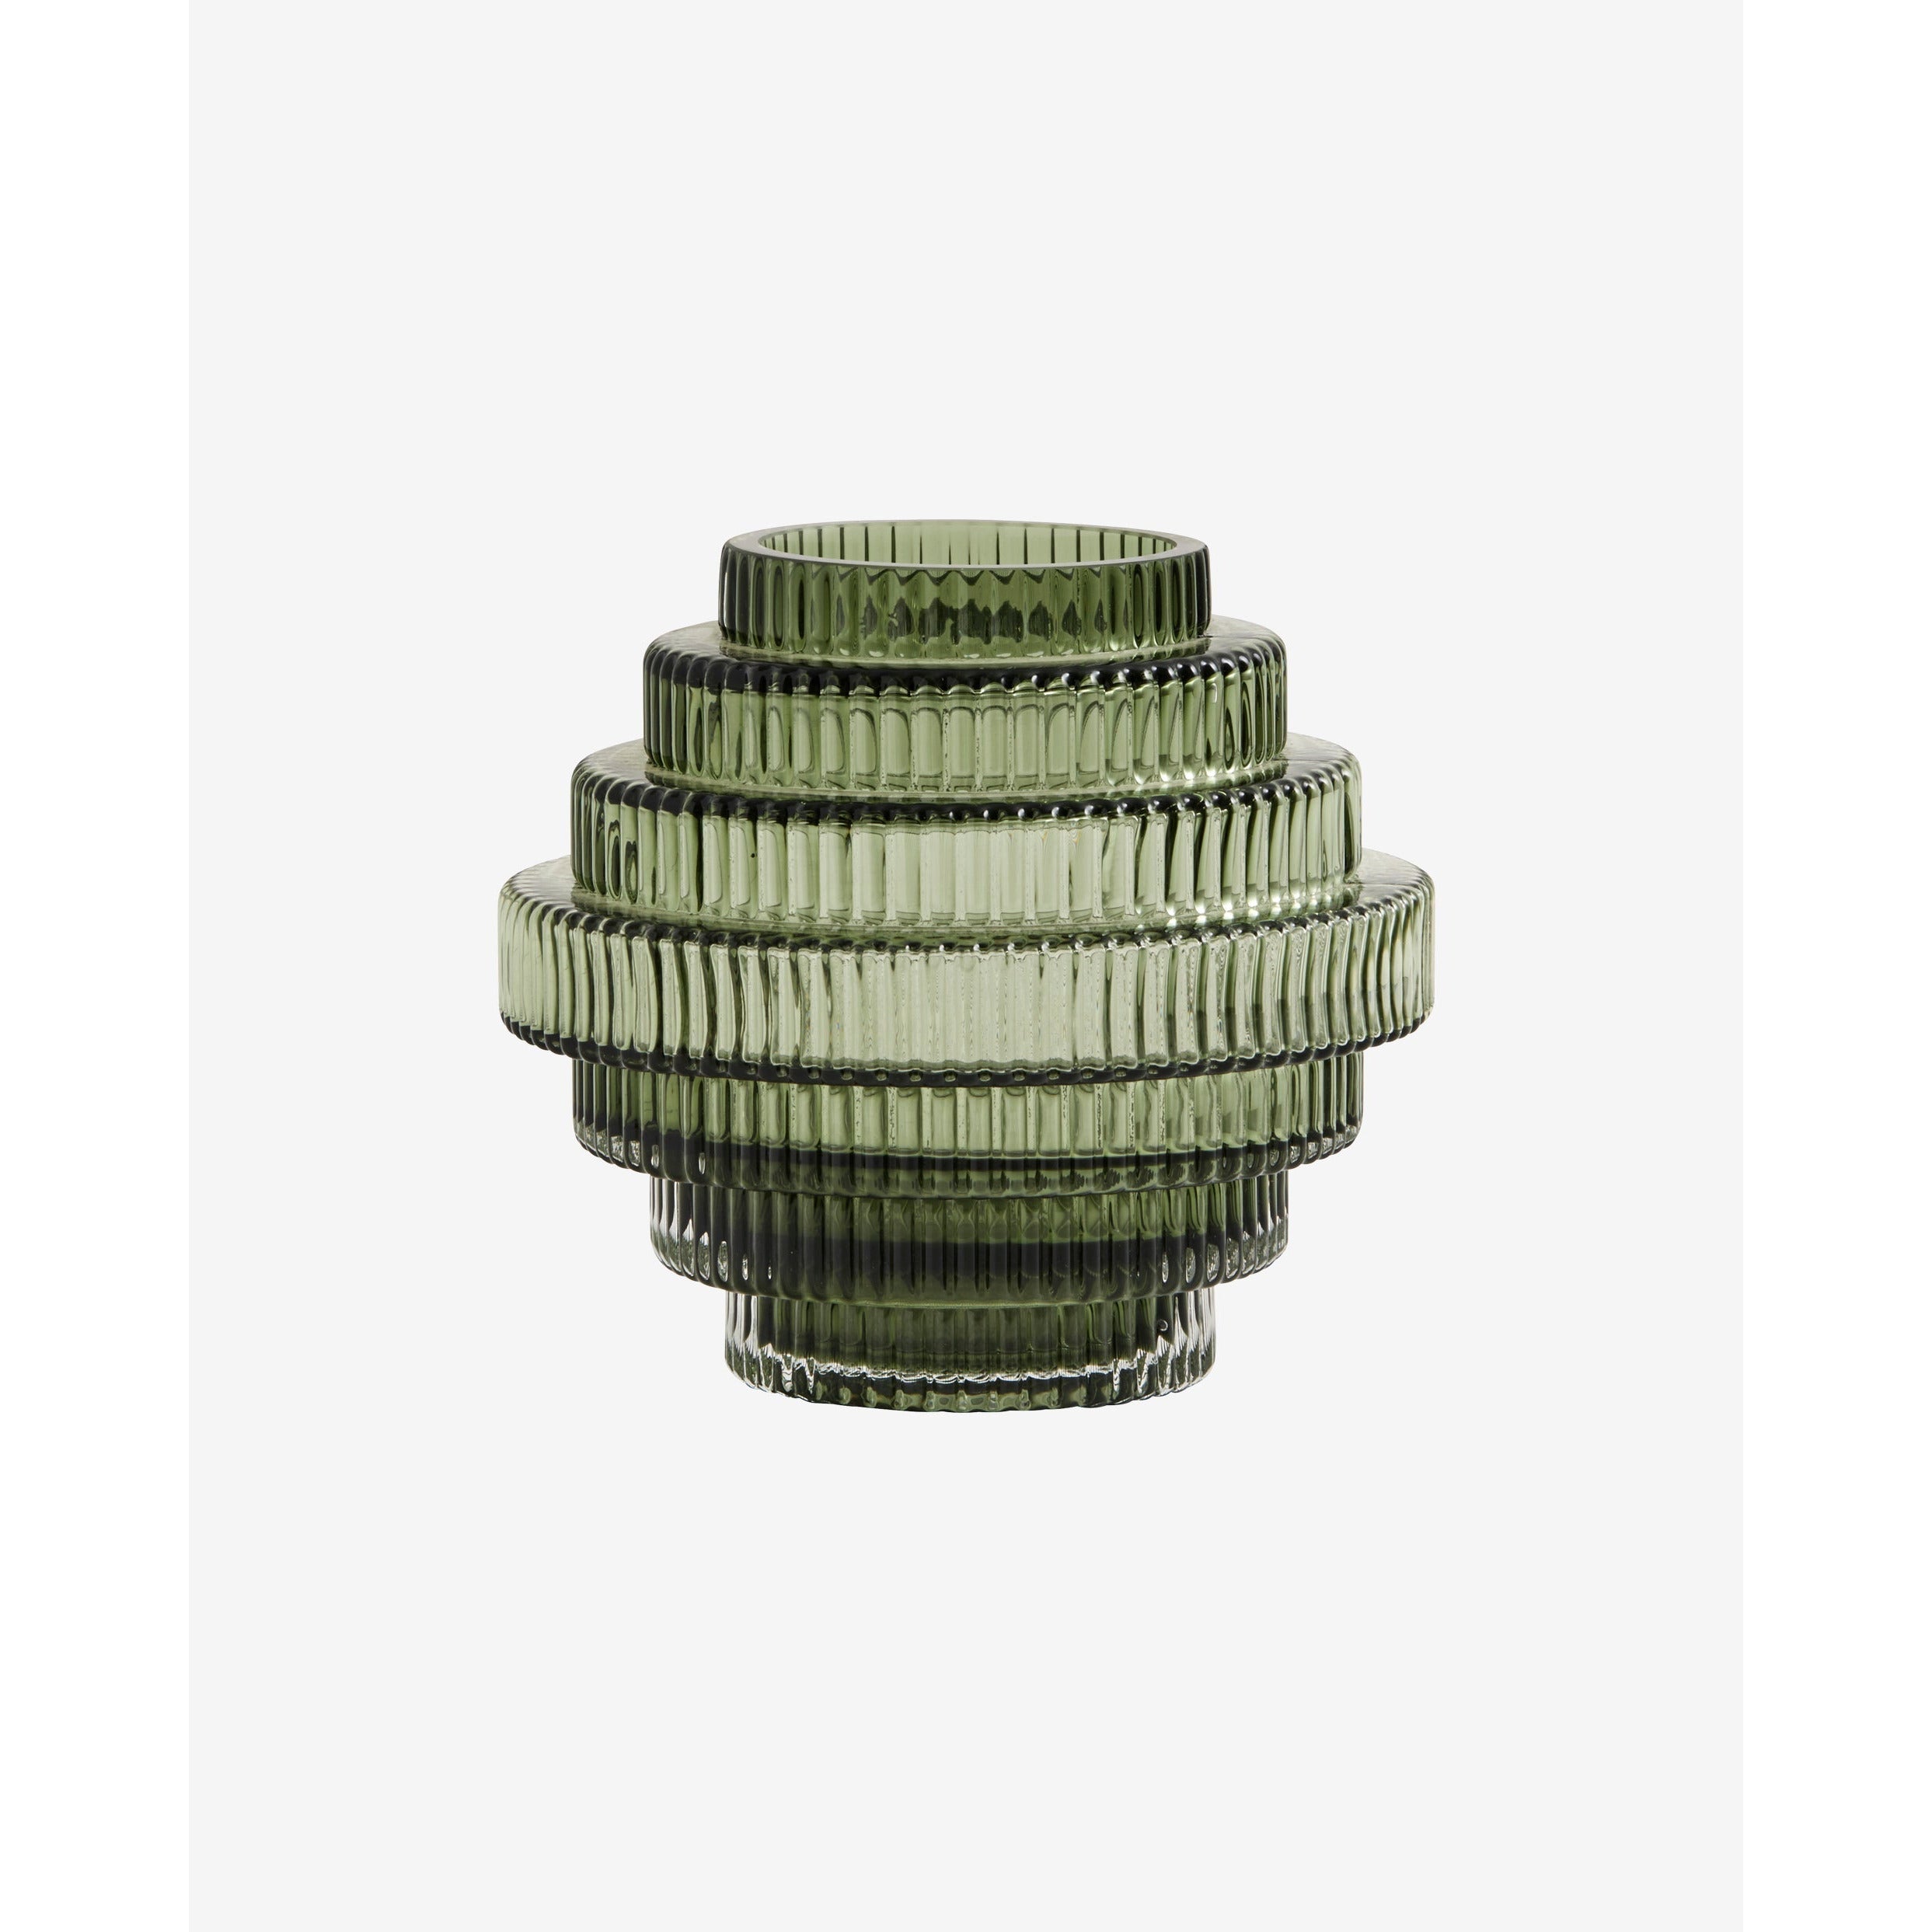 Vaso de Rill com ranhuras - H16 cm - Vissen Green